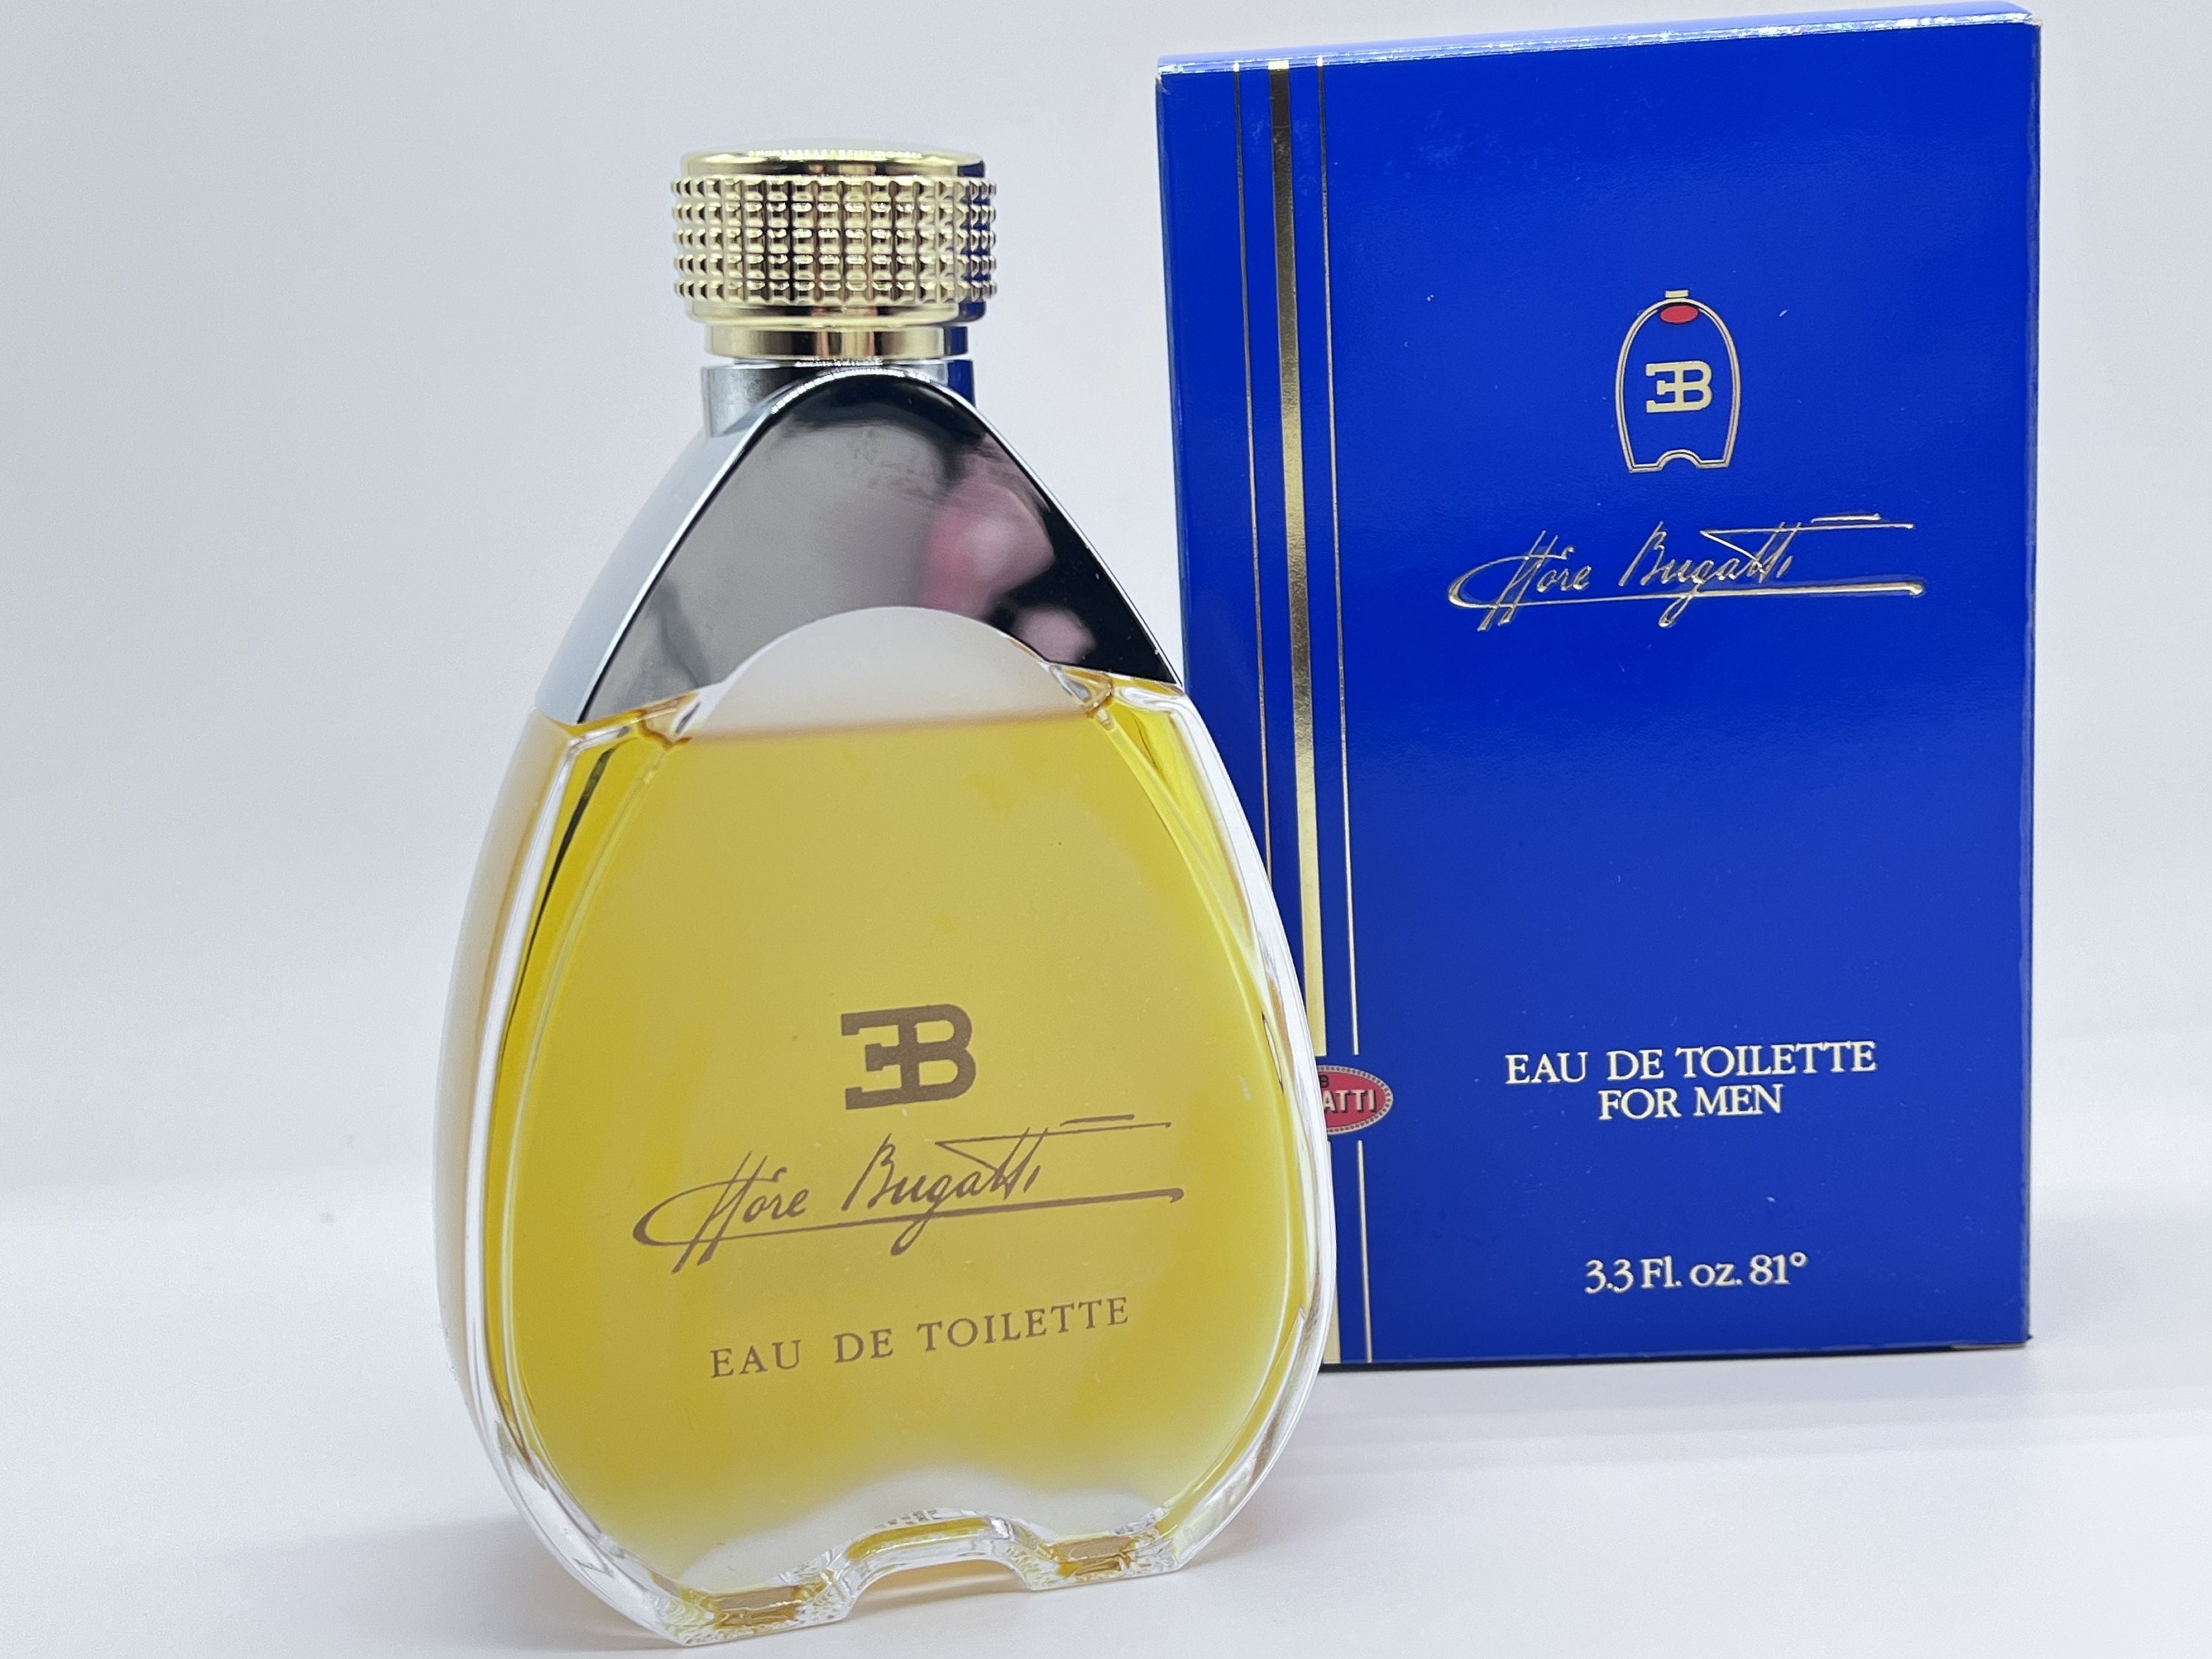 L&#039;Instant de Guerlain pour Homme EDP Guerlain cologne - a  fragrance for men 2015